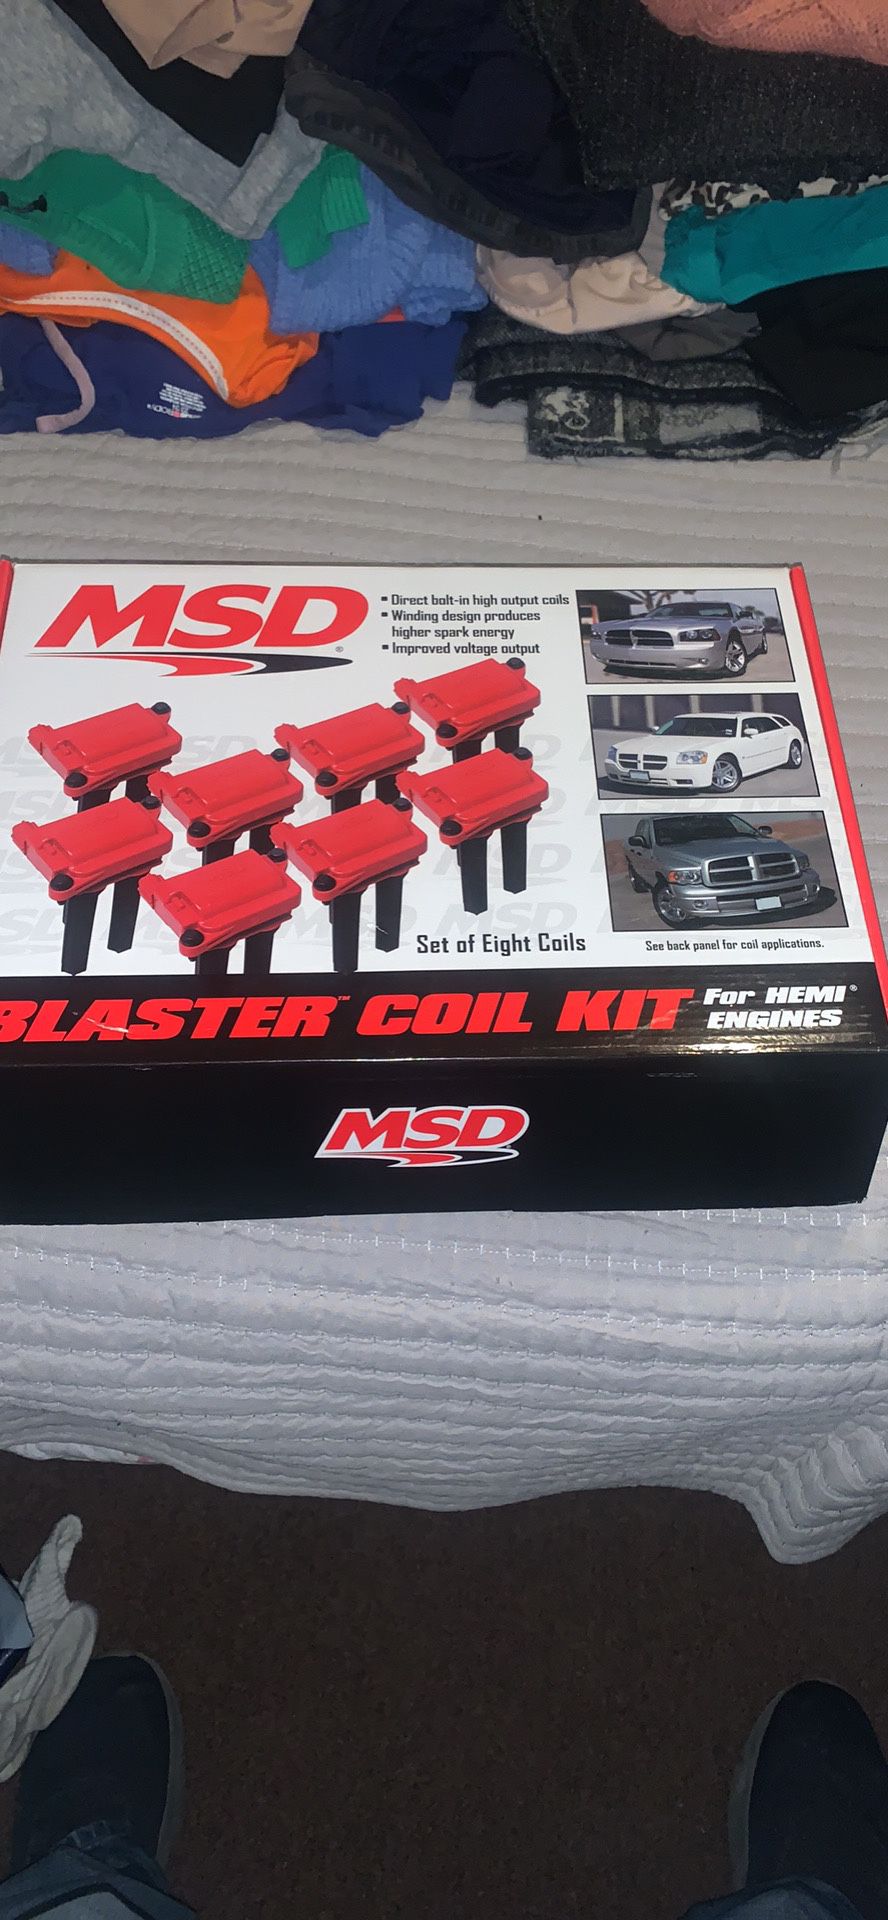 Msd Blaster Coil Kit 